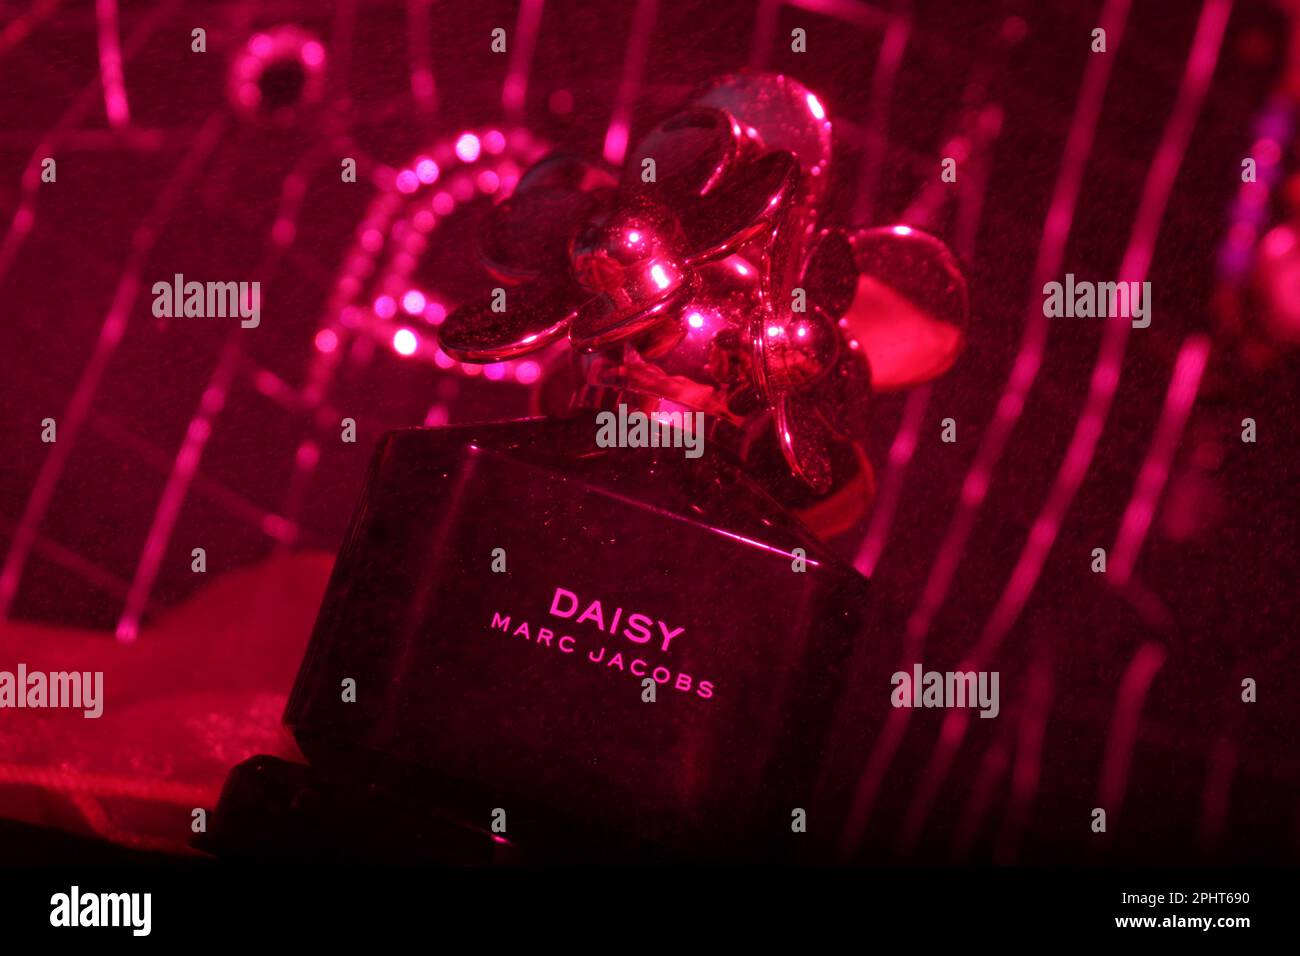 Daisy Marc Jacobs, image publicitaire Banque D'Images